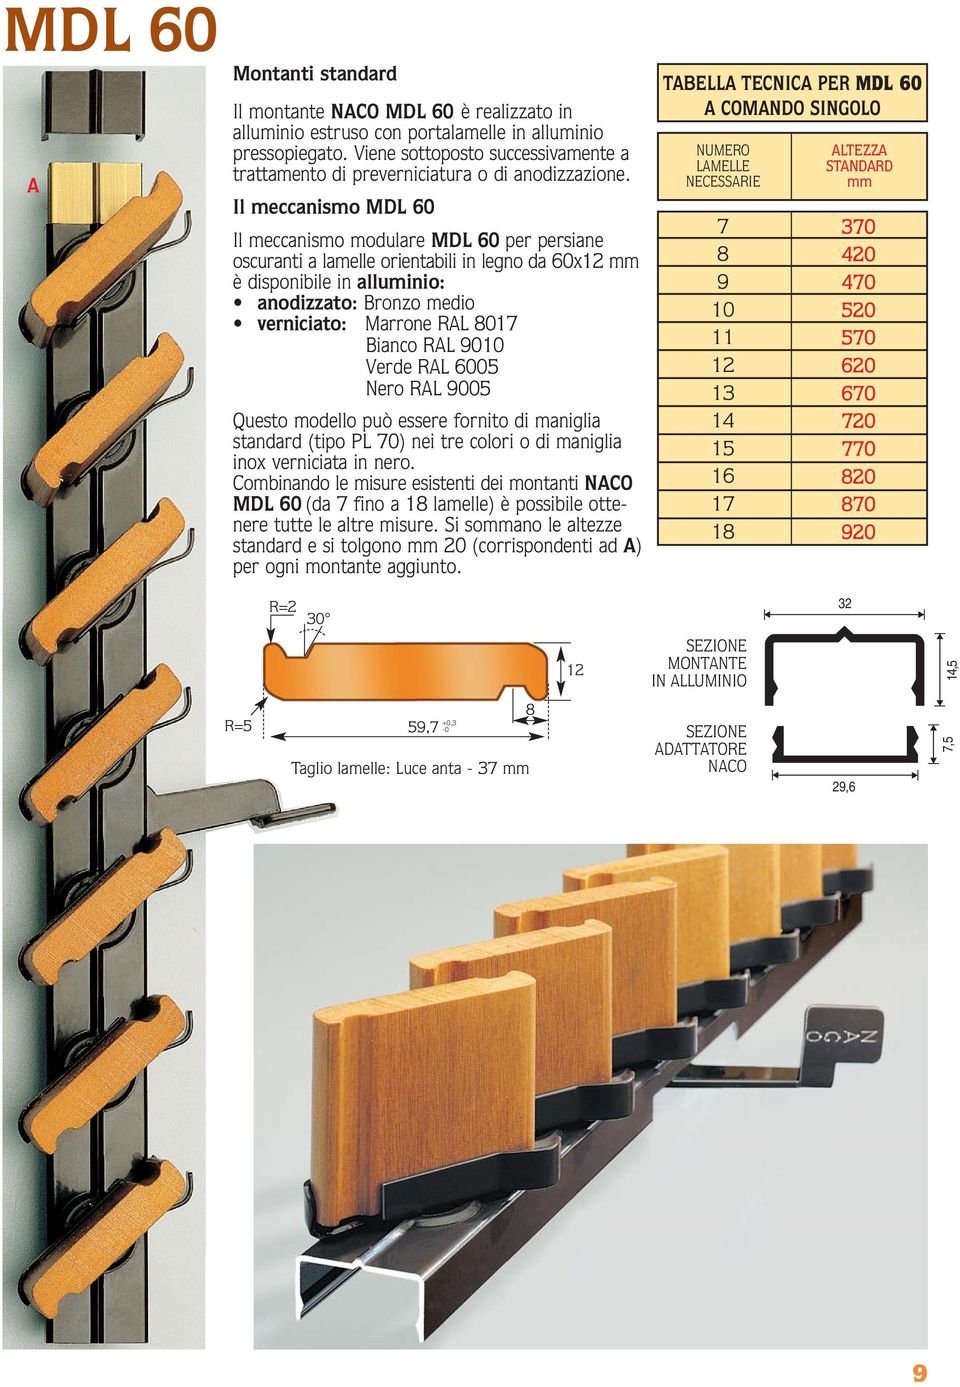 Il meccanismo MDL 60 Il meccanismo modulare MDL 60 per persiane oscuranti a lamelle orientabili in legno da 60x12 mm è disponibile in alluminio: anodizzato: Bronzo medio verniciato: Marrone RAL 017